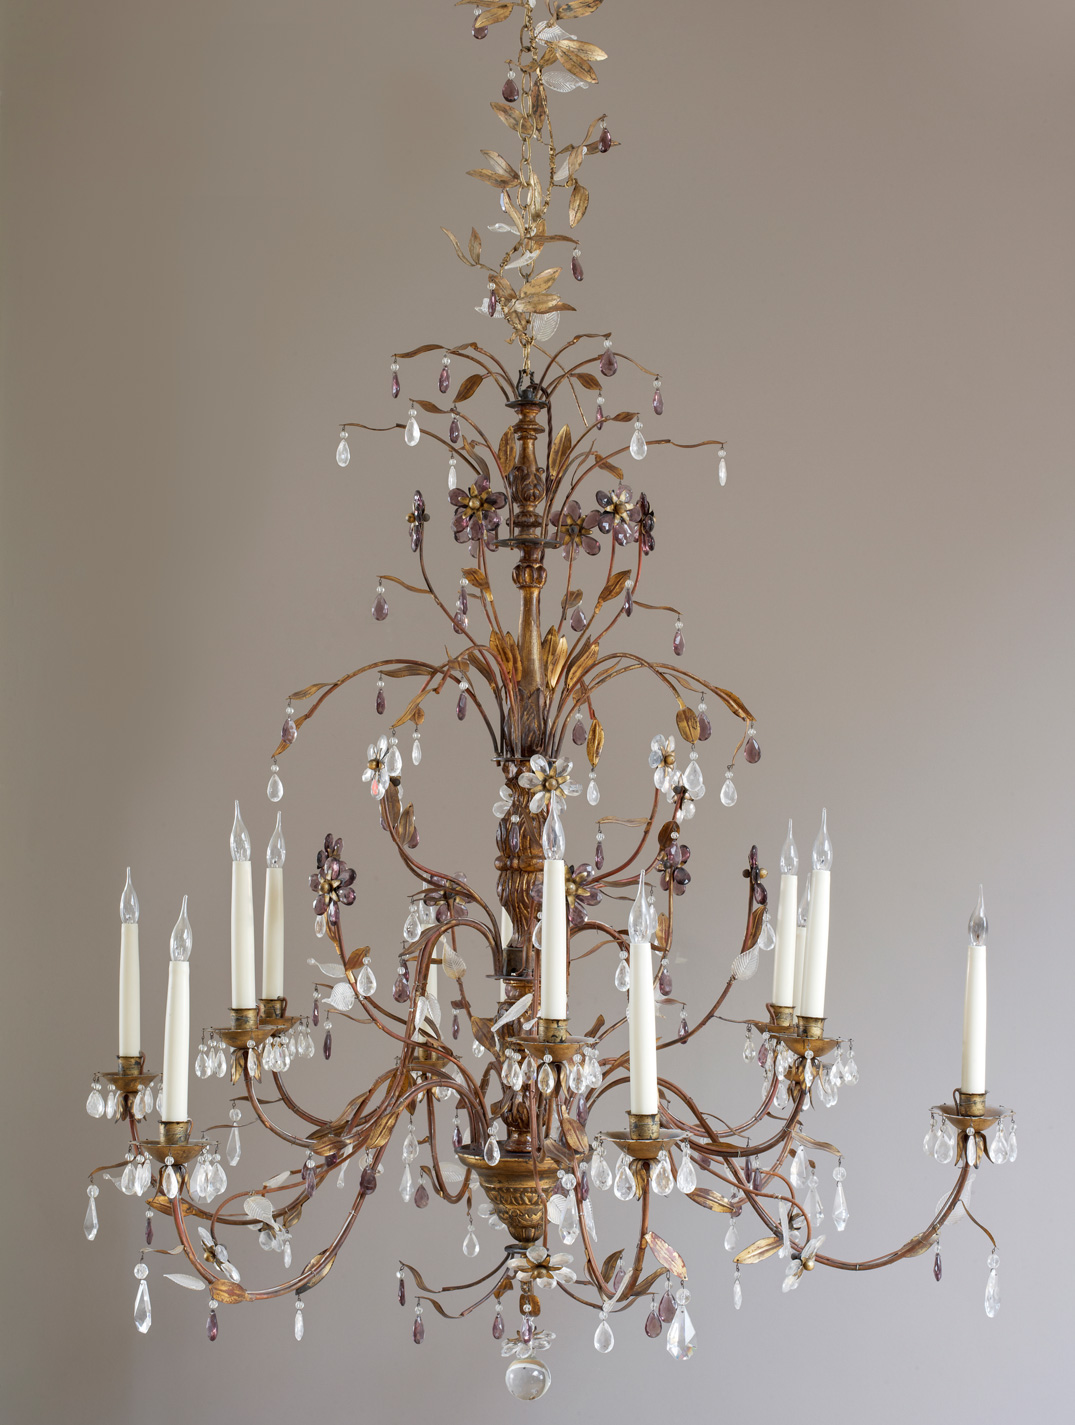 Genoese style chandelier.